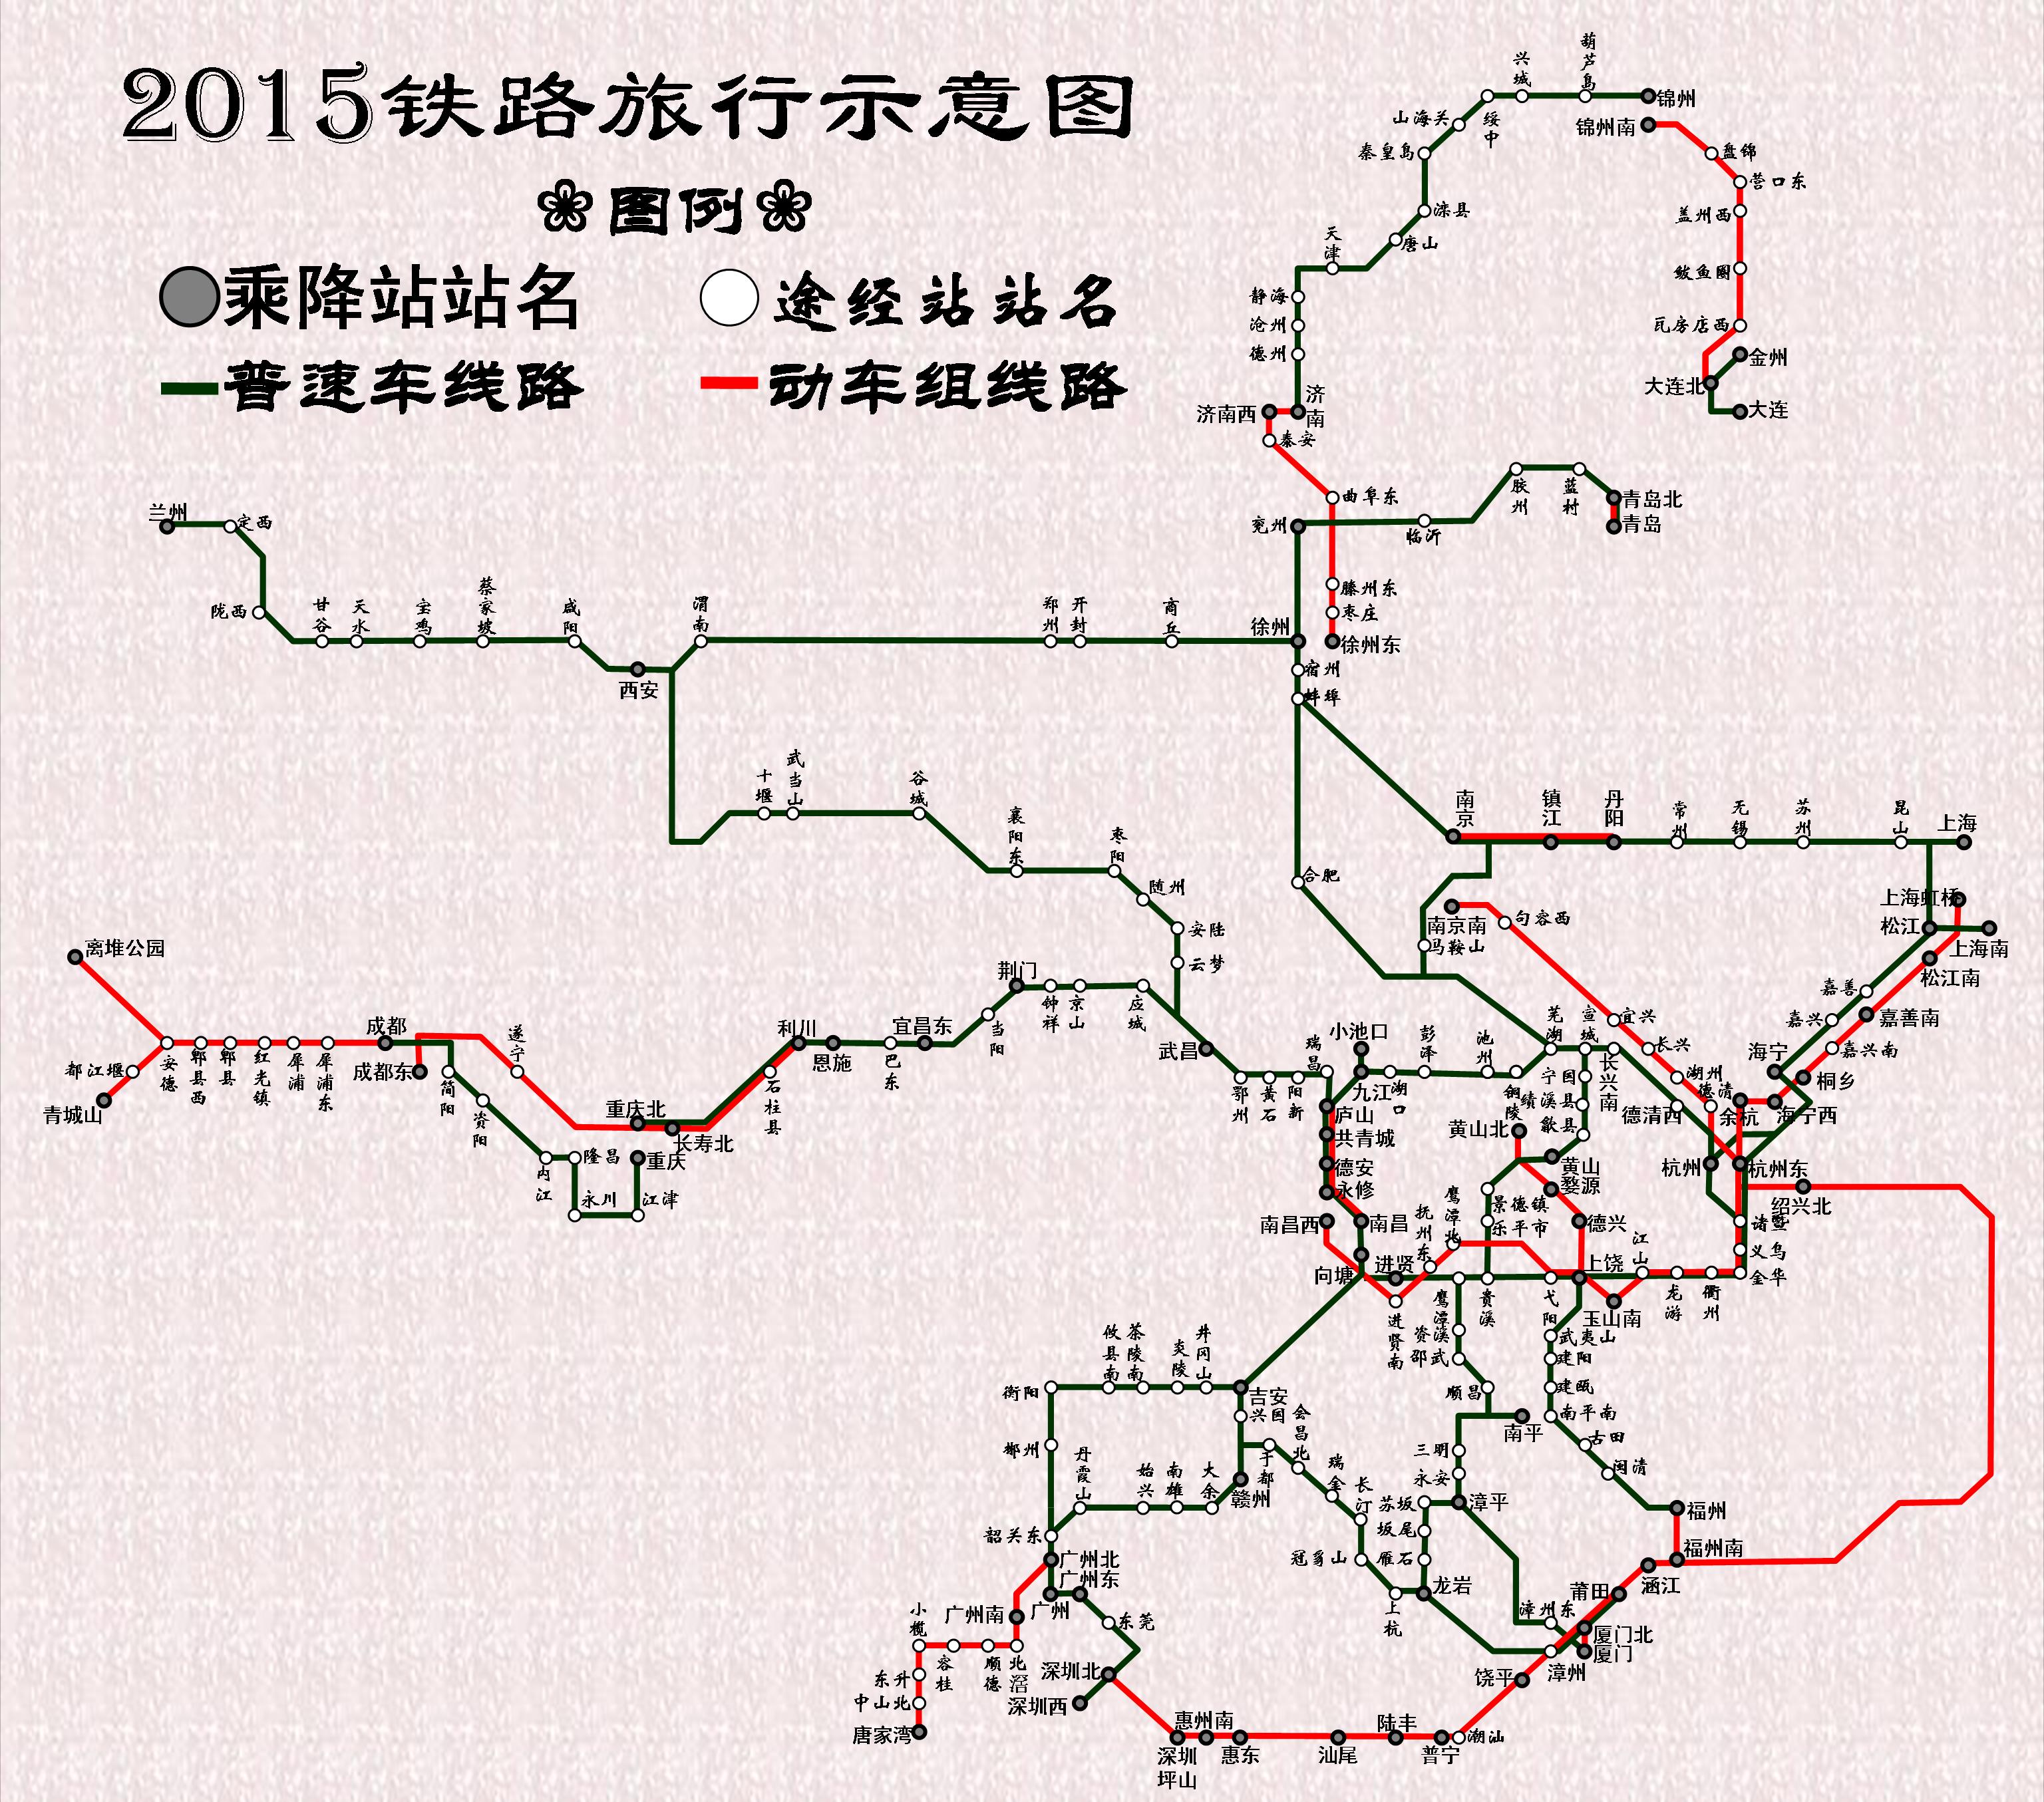 2015铁路旅行示意图（全年）.jpg